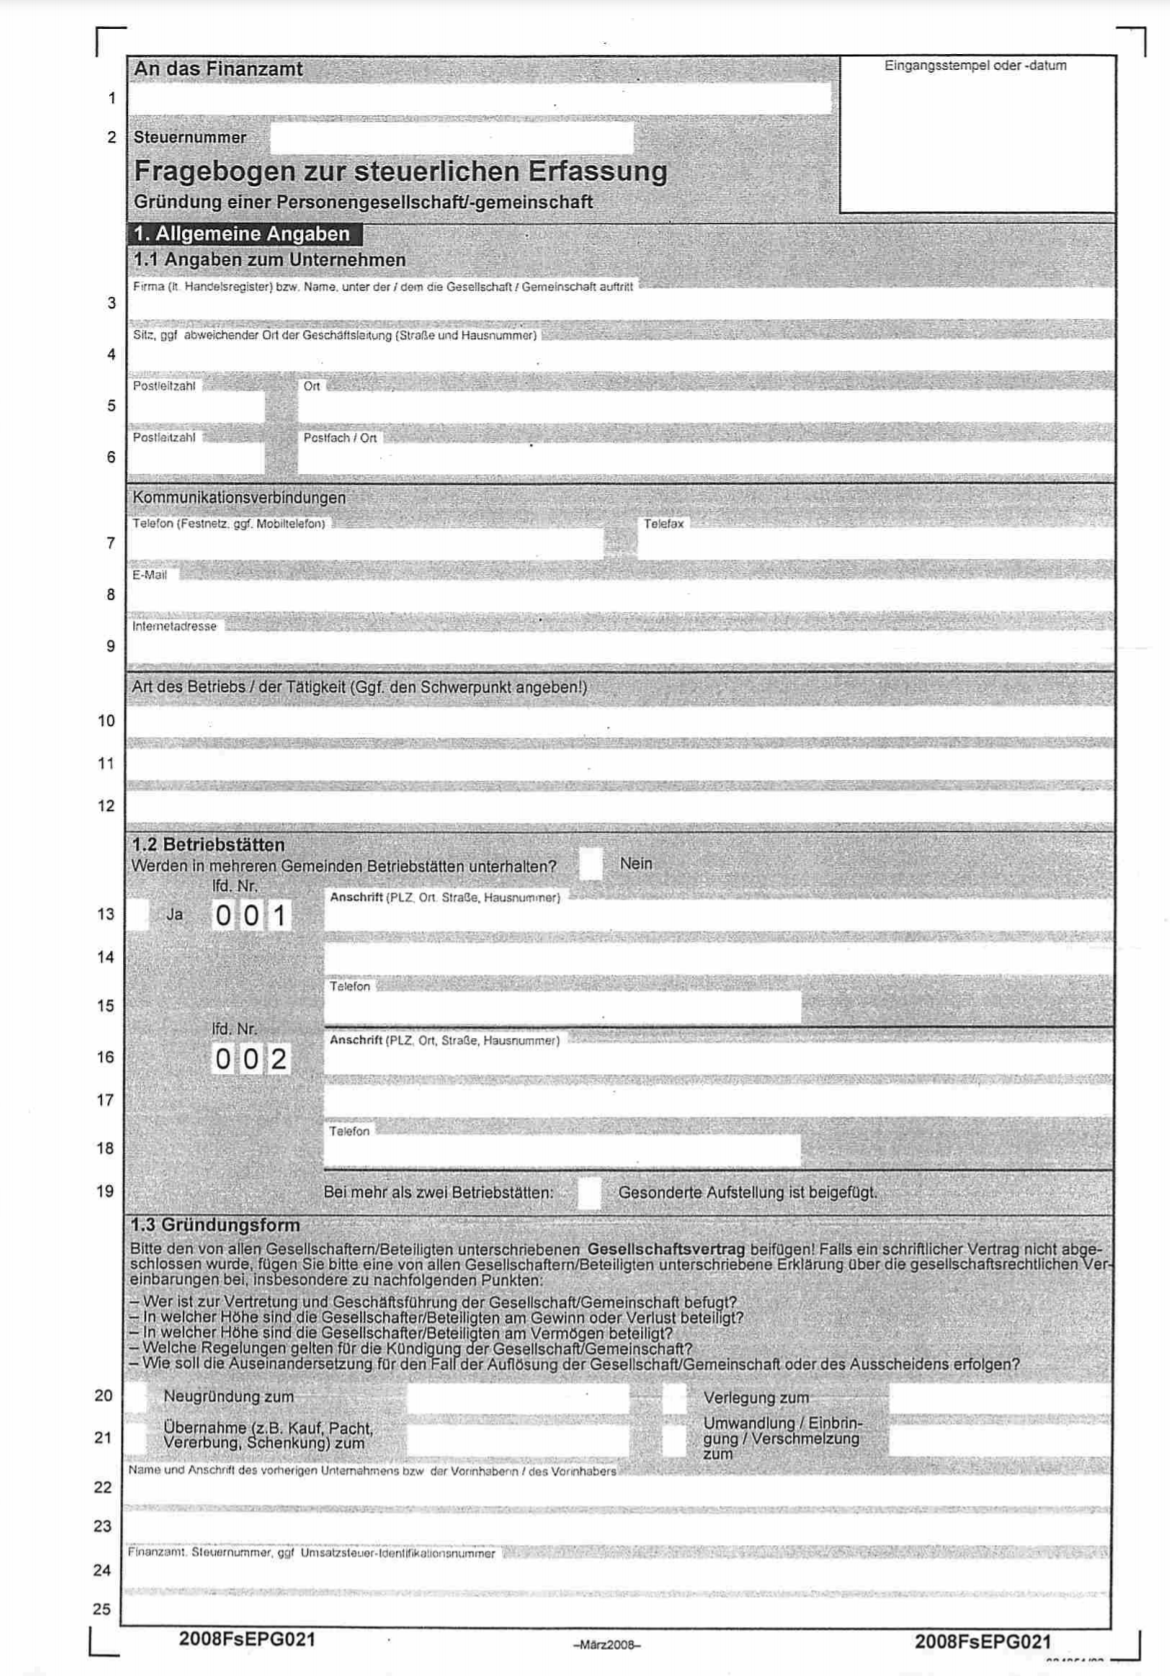 Fragebogen zur steuerlichen Erfassung - Rüdiger Kreutz Steuerberater seit 2009 in Hamburg